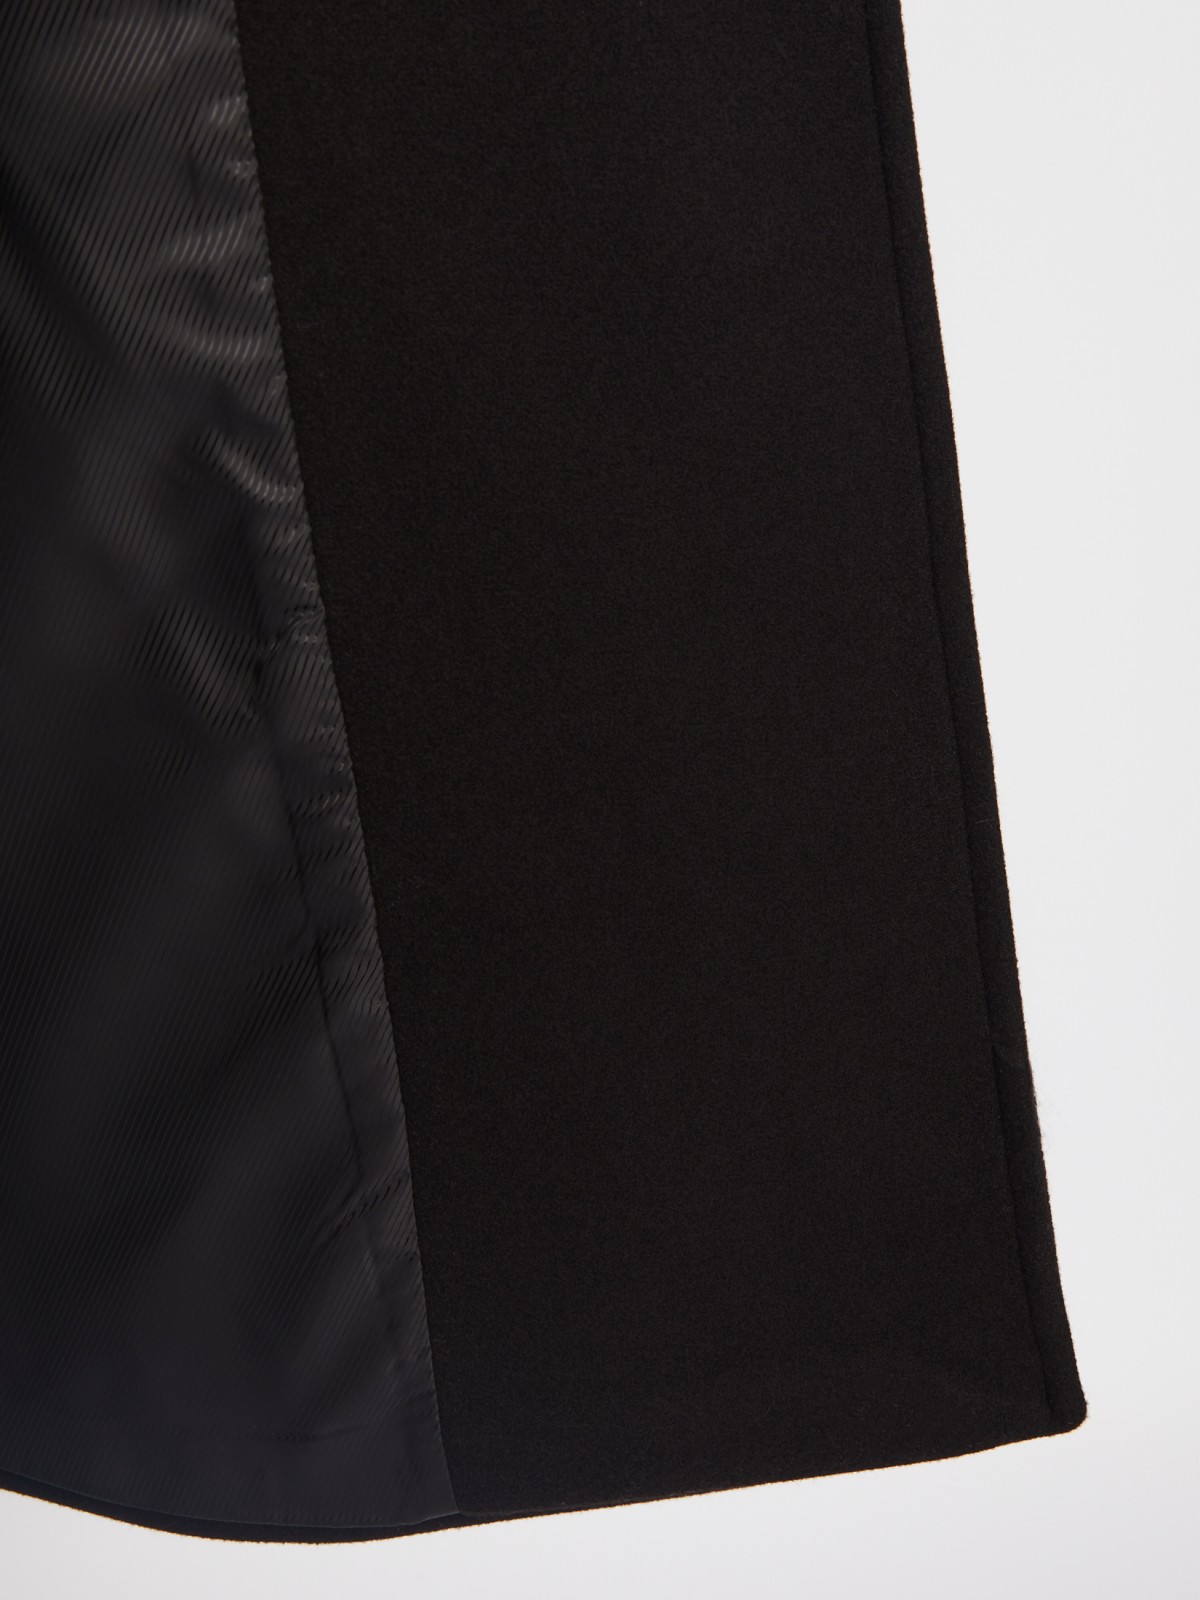 Длинное пальто оверсайз силуэта без утеплителя на пуговицах с поясом zolla 023335857024, цвет черный, размер XS - фото 5